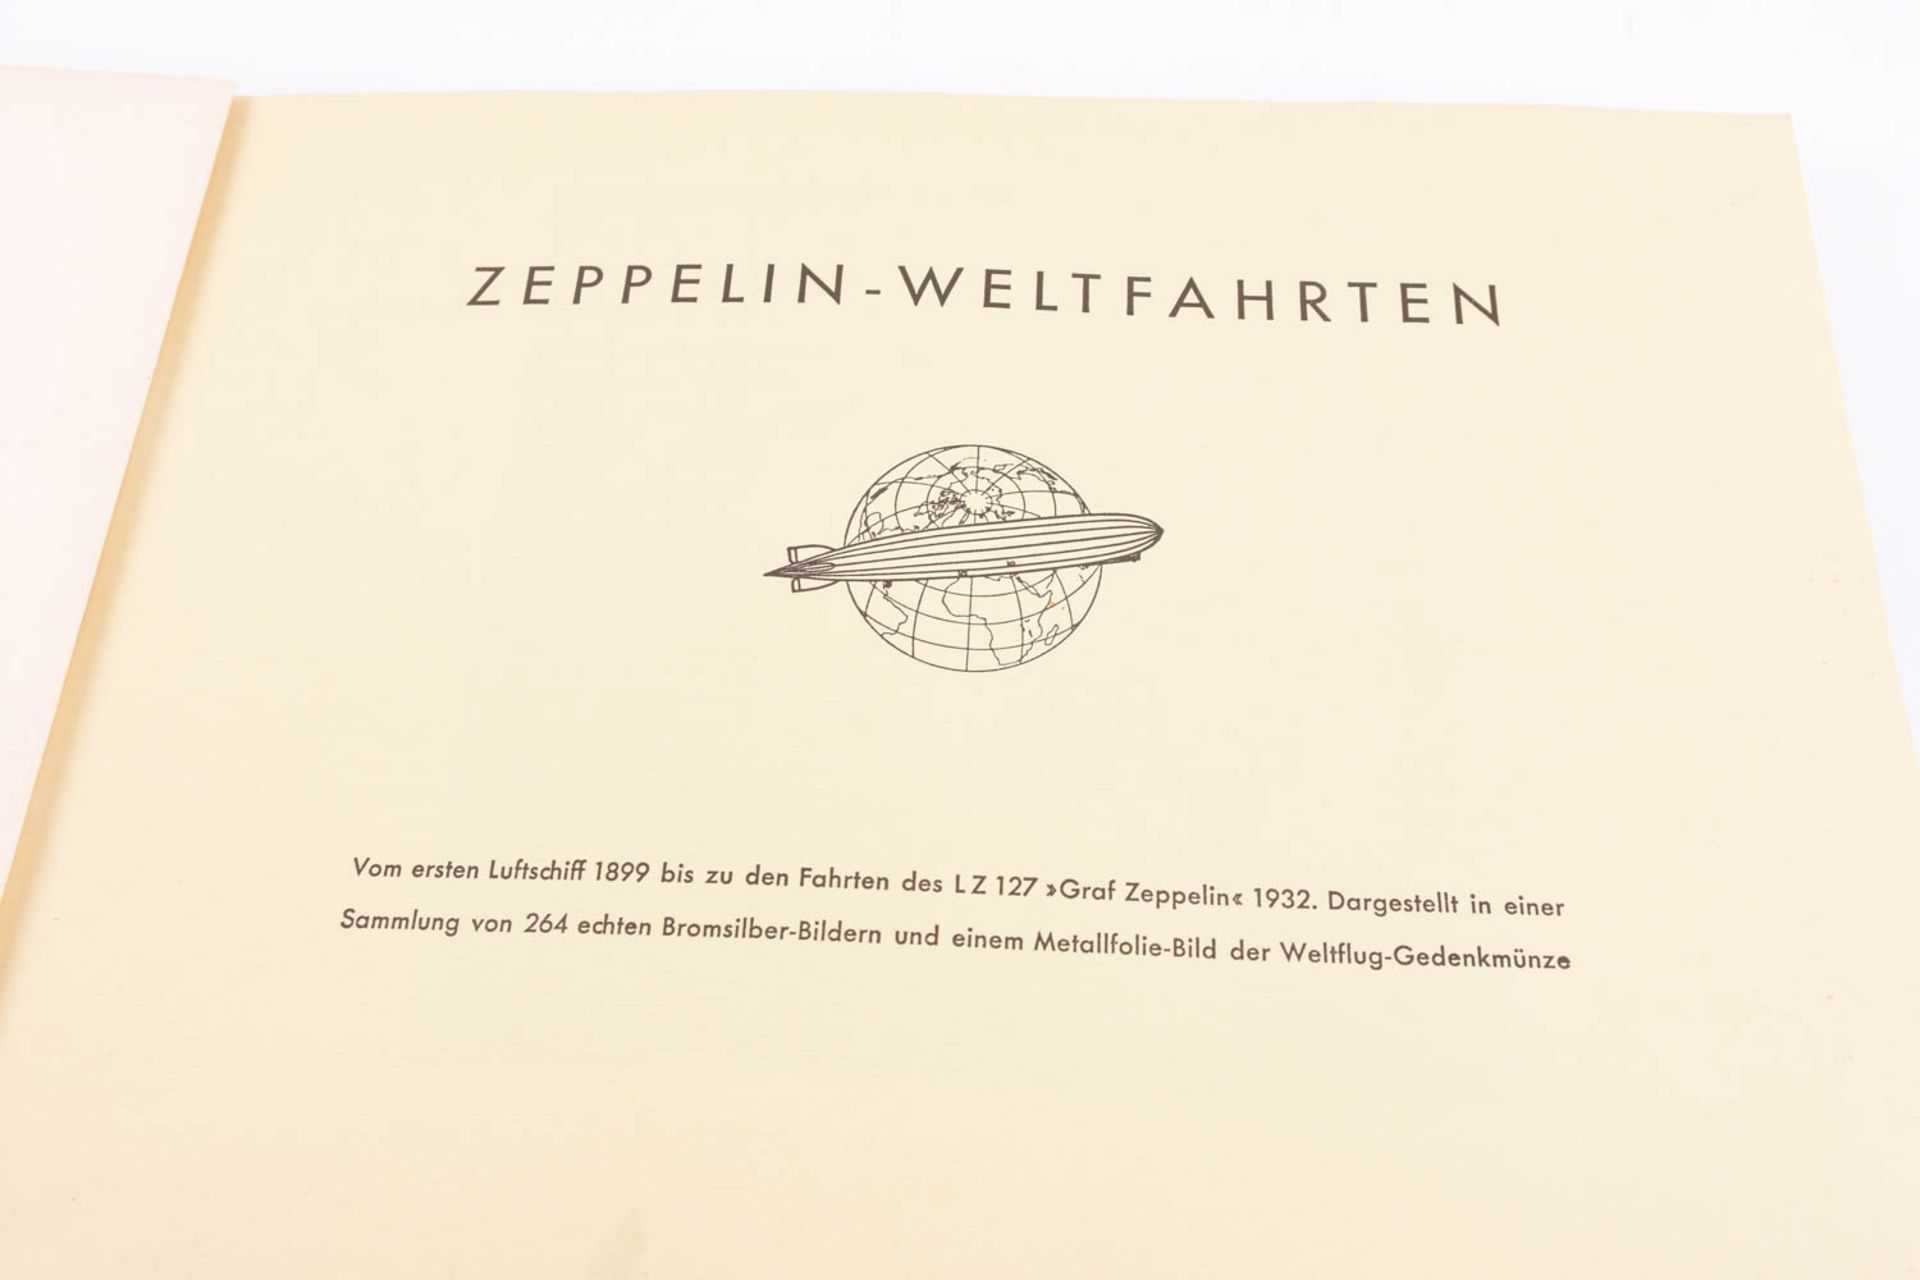 Zeppelin-Weltfahrten Buch, 1932 - Bild 2 aus 9